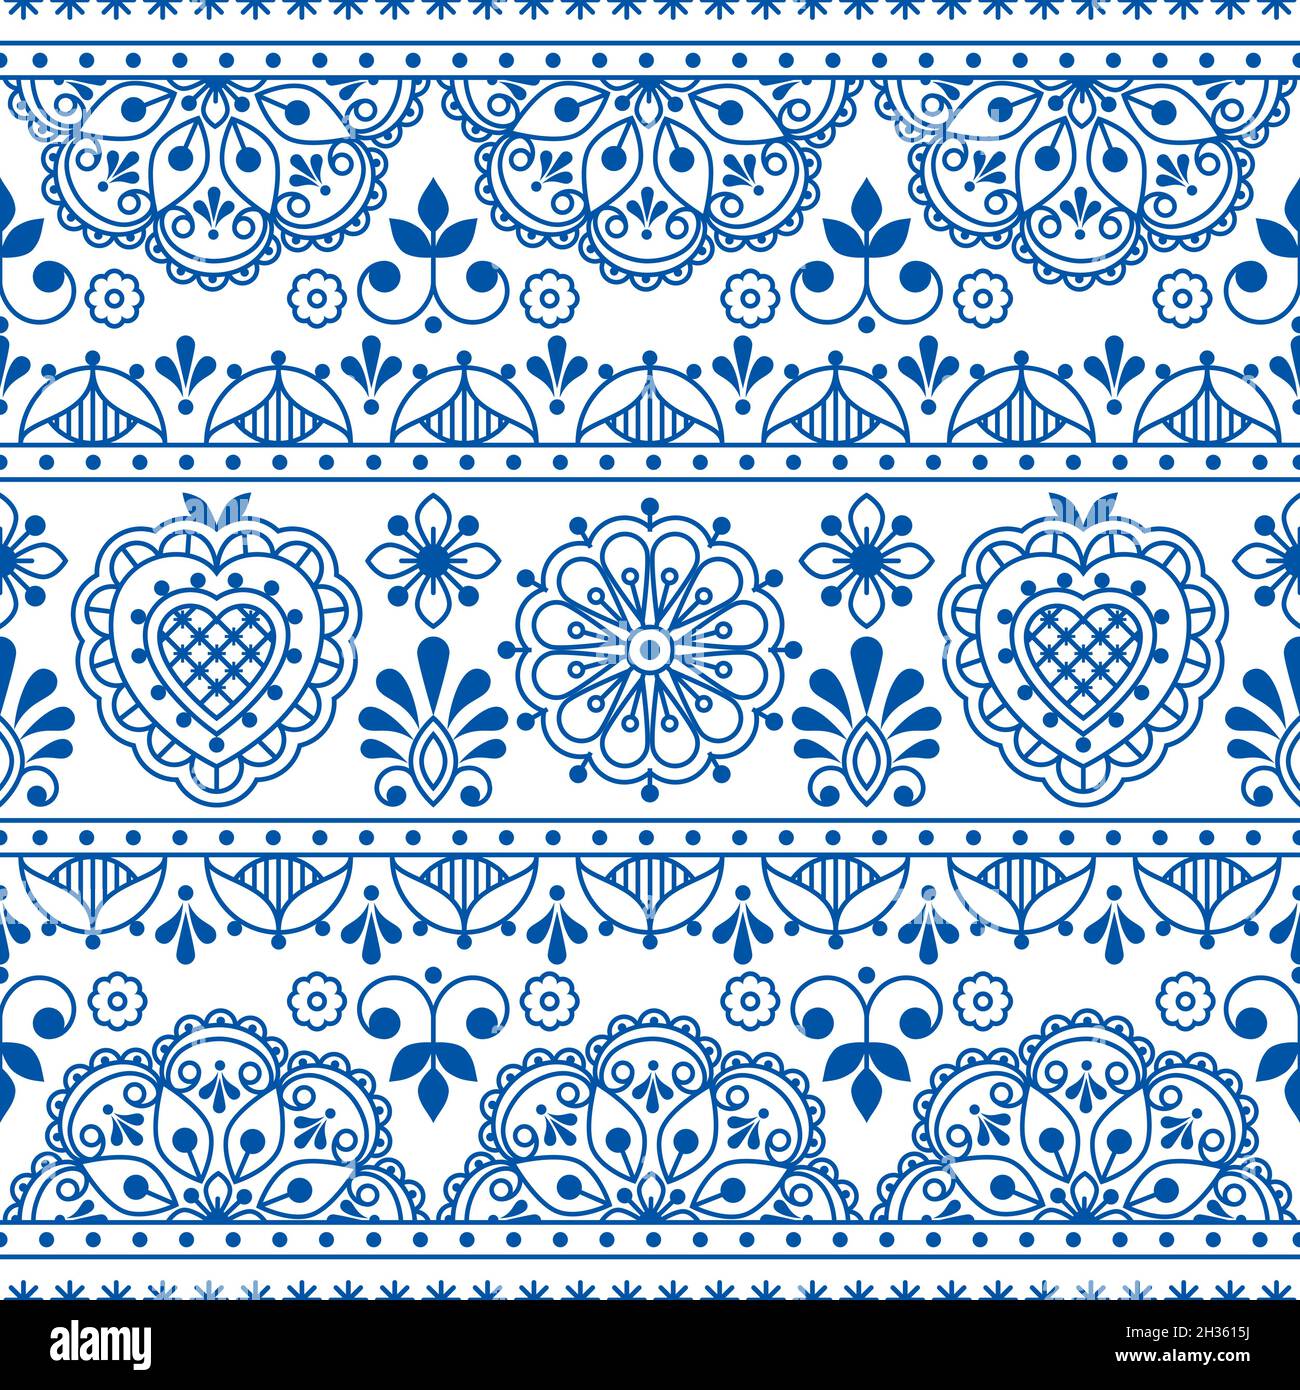 Skandinavische Volkskunst skizzieren nahtlose Textil- oder Stoffdruck, marineblaues repetitve-Design mit Blumen inspiriert von Spitze und Stickerei Rückengro Stock Vektor